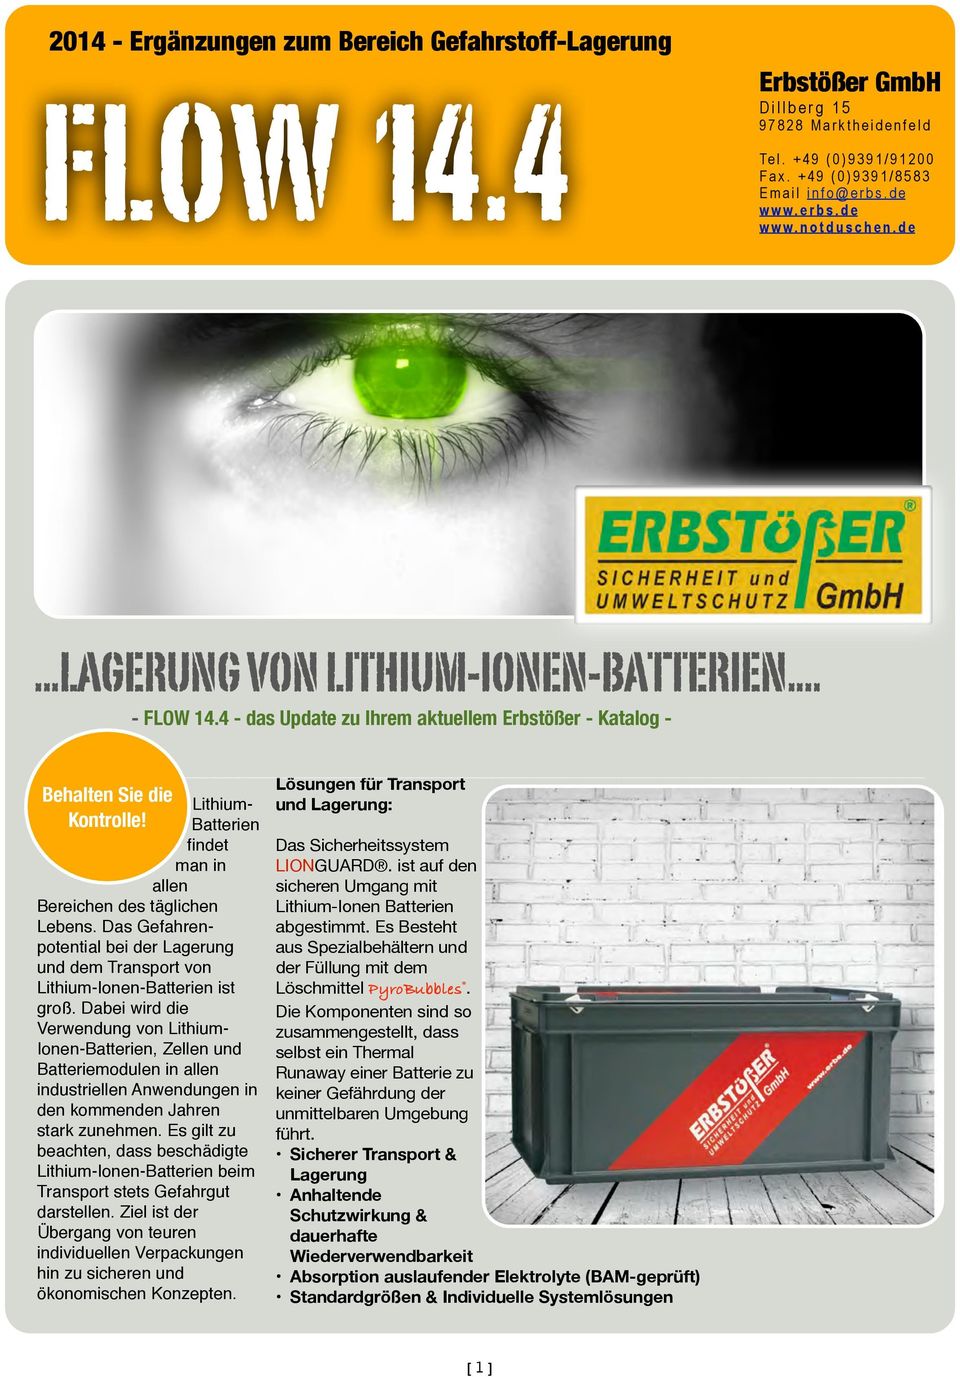 Lithium- Batterien findet man in allen Bereichen des täglichen Lebens. Das Gefahrenpotential bei der Lagerung und dem Transport von Lithium-Ionen-Batterien ist groß.